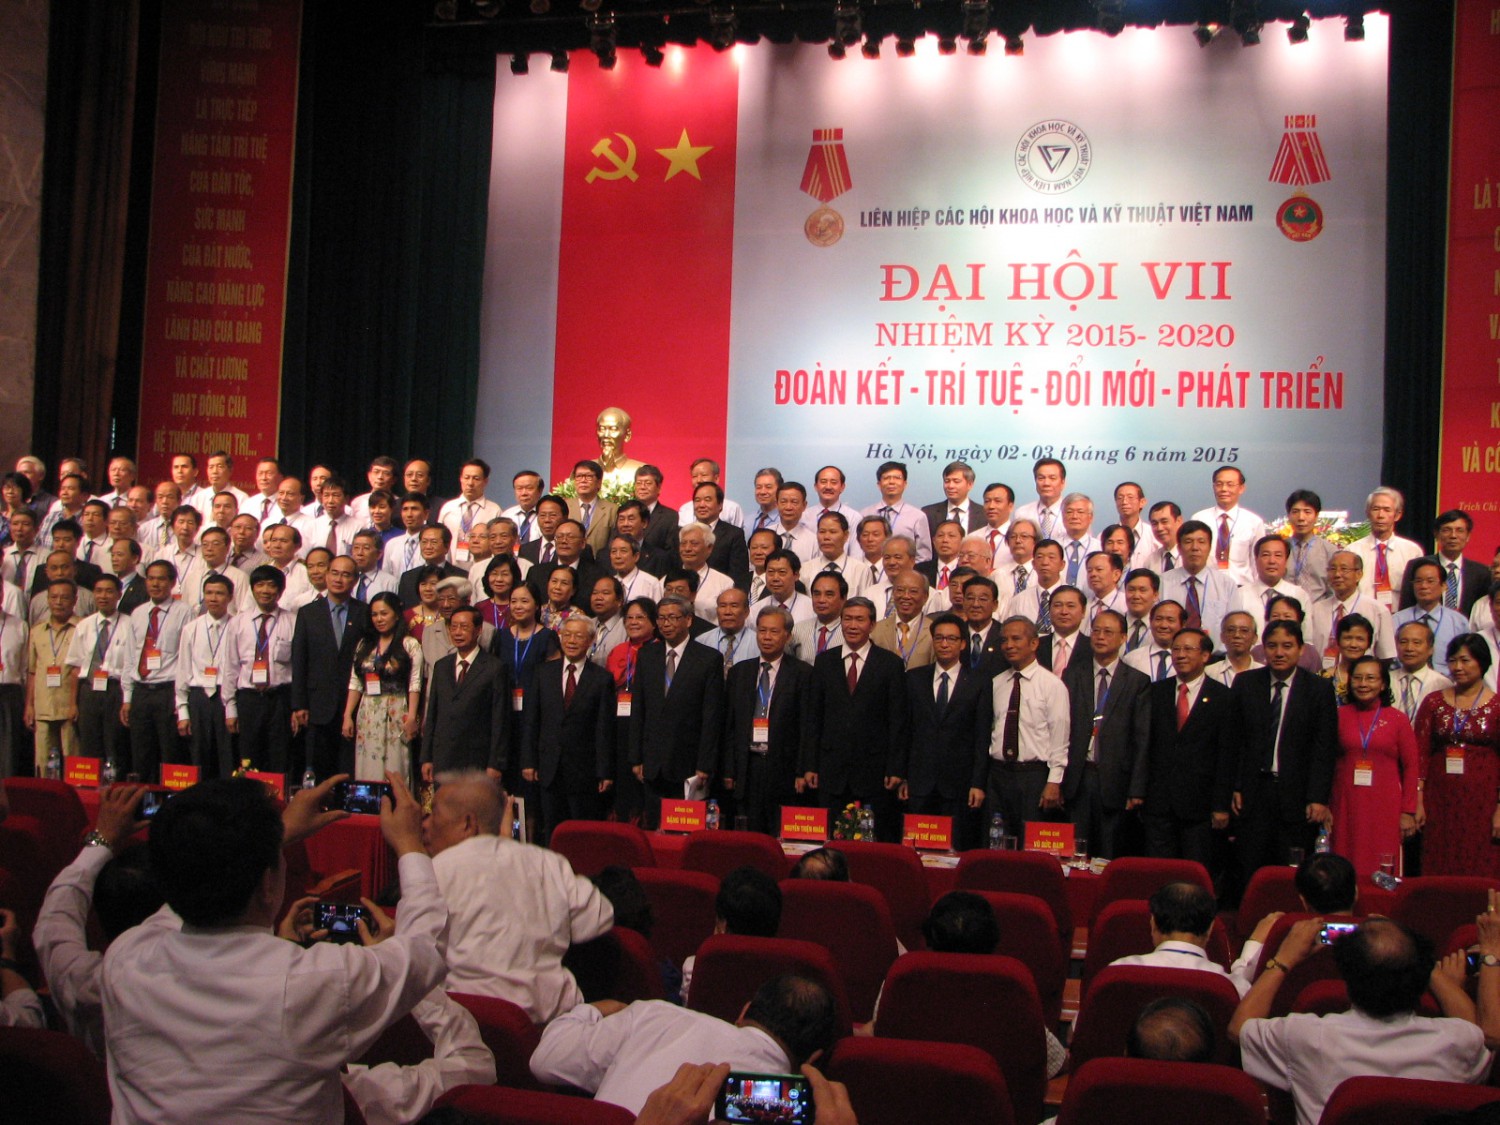 Ban chấp hành khóa VII Liên hiệp các Hội Khoa học và Kỹ thuật Việt Nam.